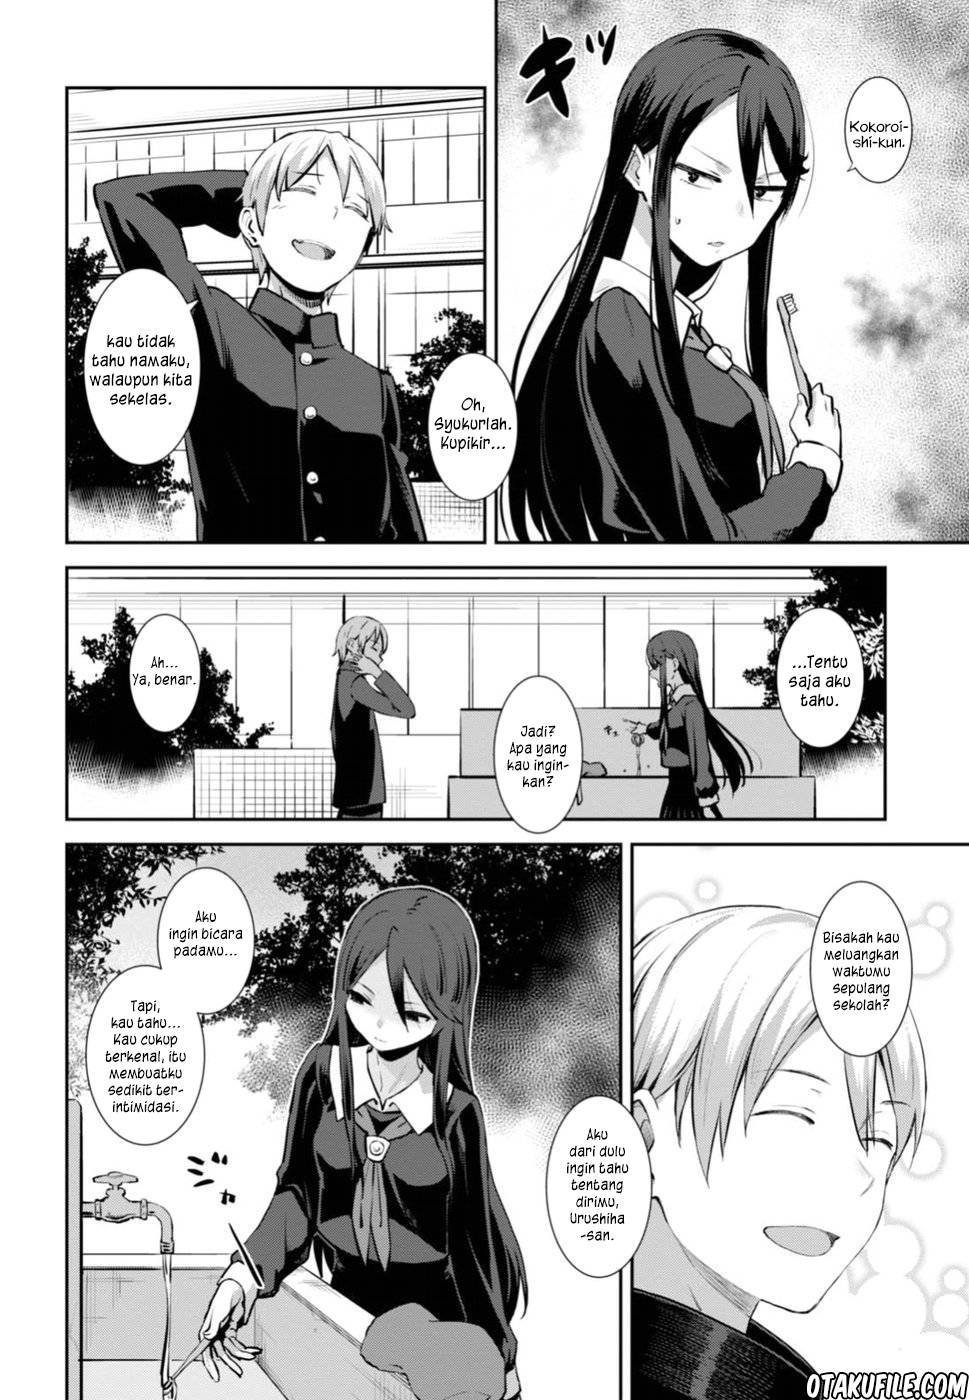 Baca Urushiha Sarara wa Koi nado Shinai! Chapter 1  - GudangKomik